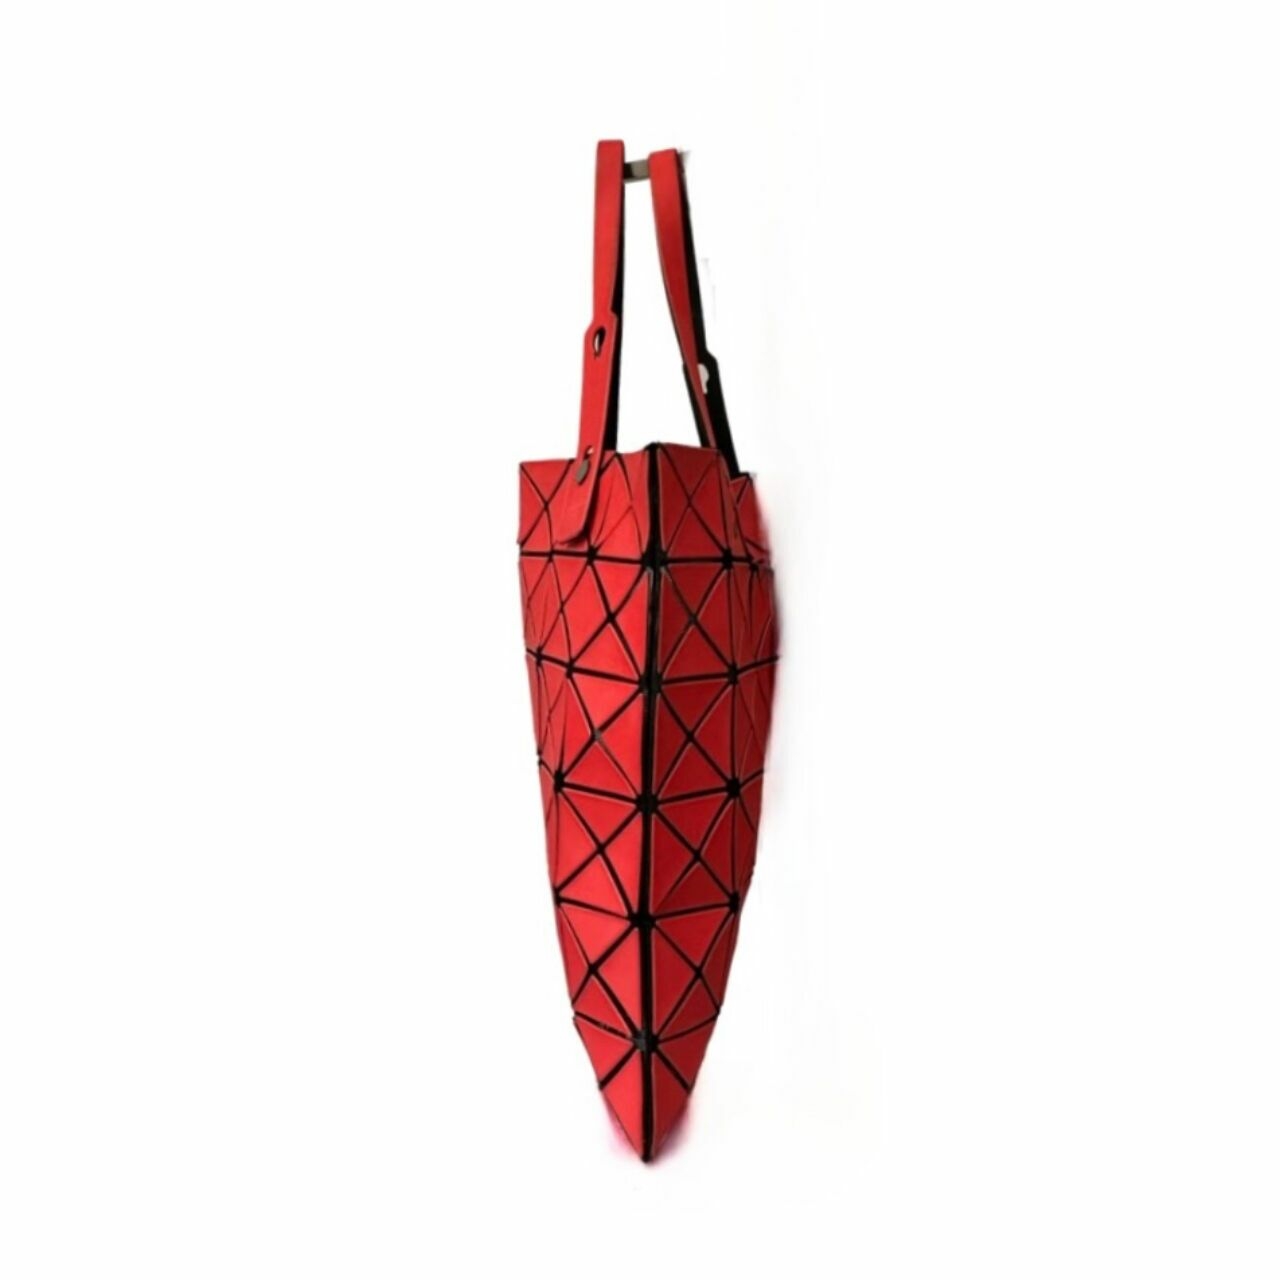 Issey Miyake Bao Bao Red Geometric Tote Bag